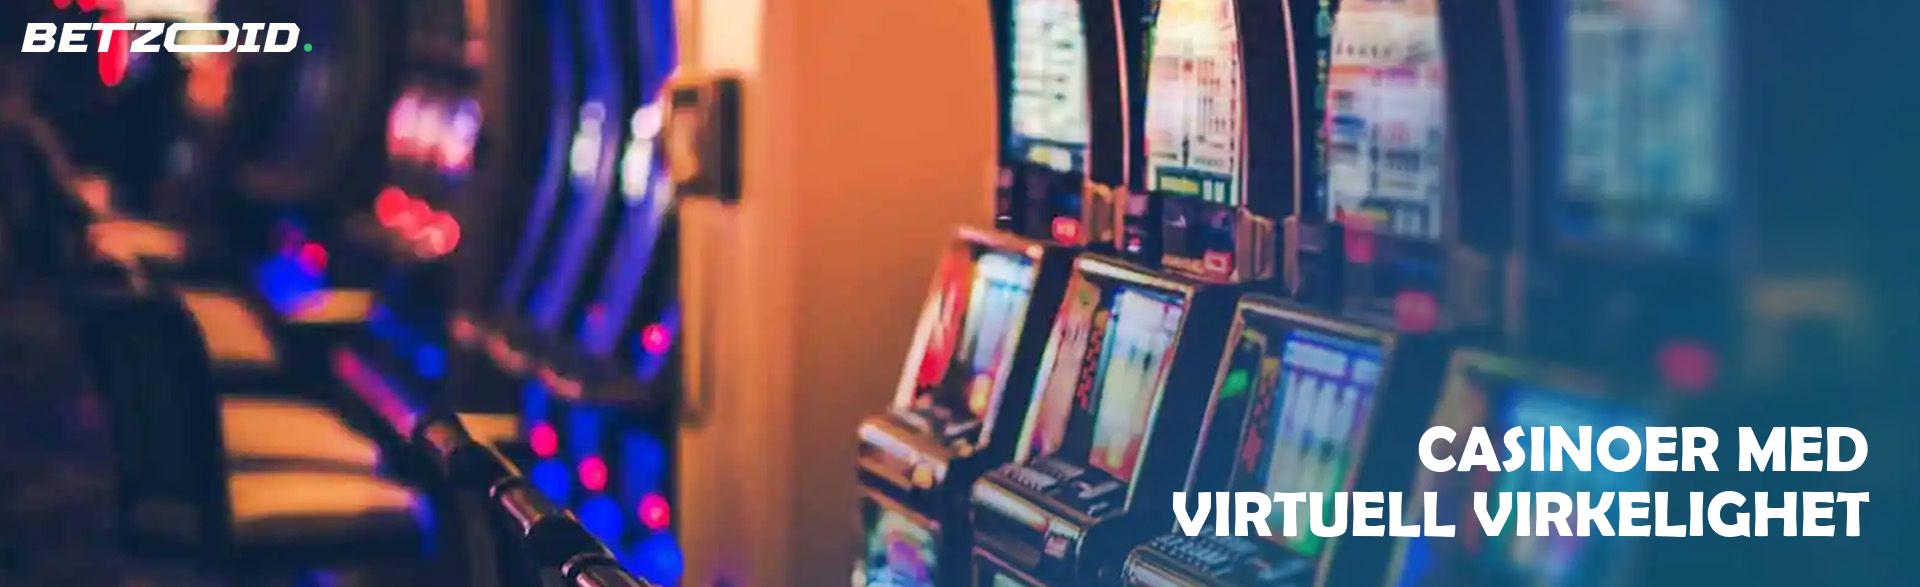 Casinoer med Virtuell Virkelighet.